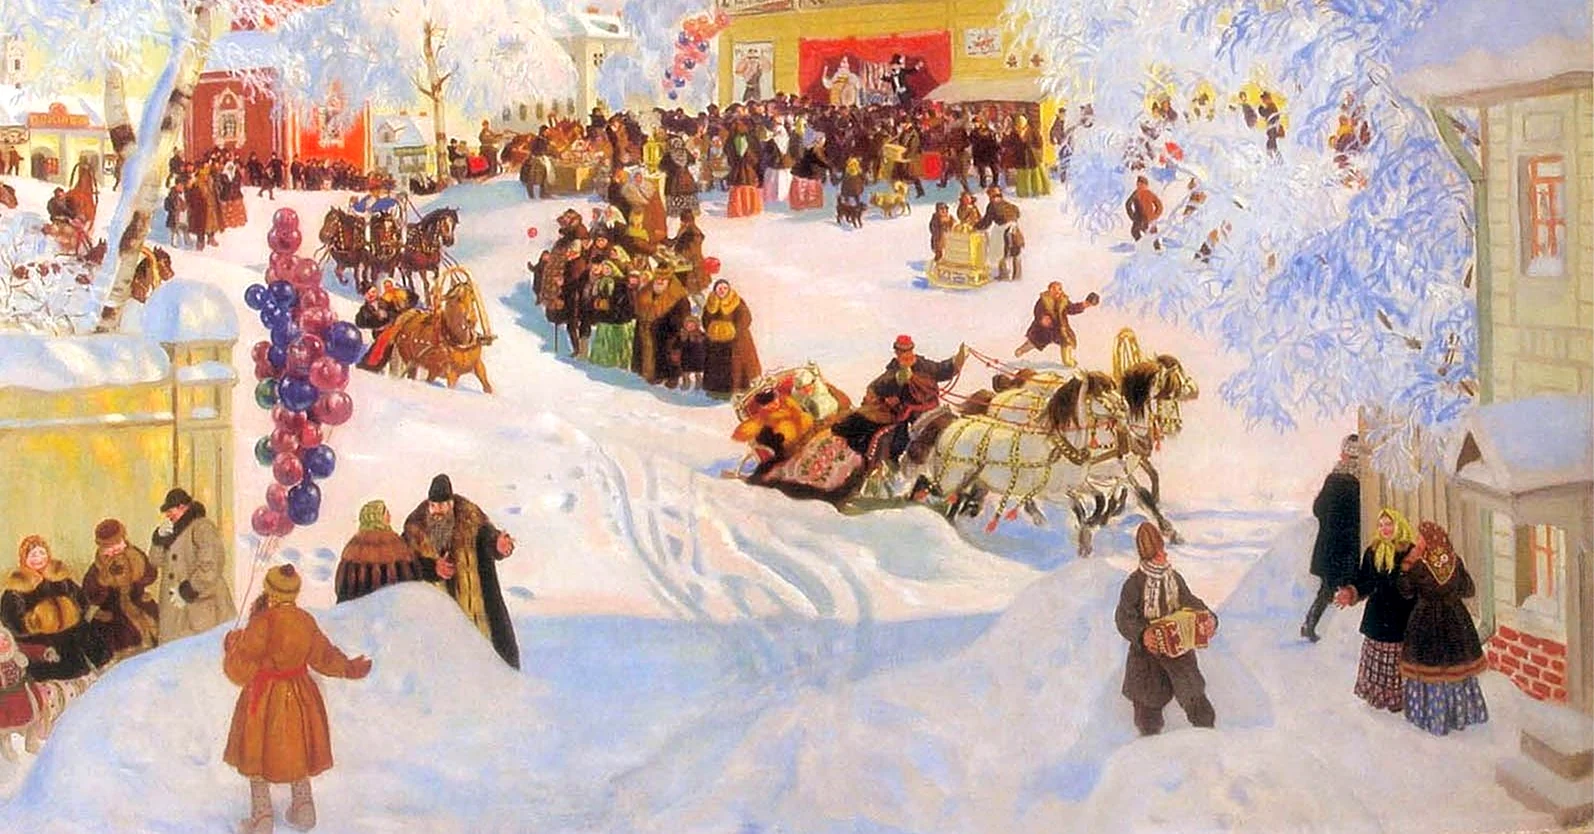 Картина масленичные гуляния 1881 года Рябушкина Андрея